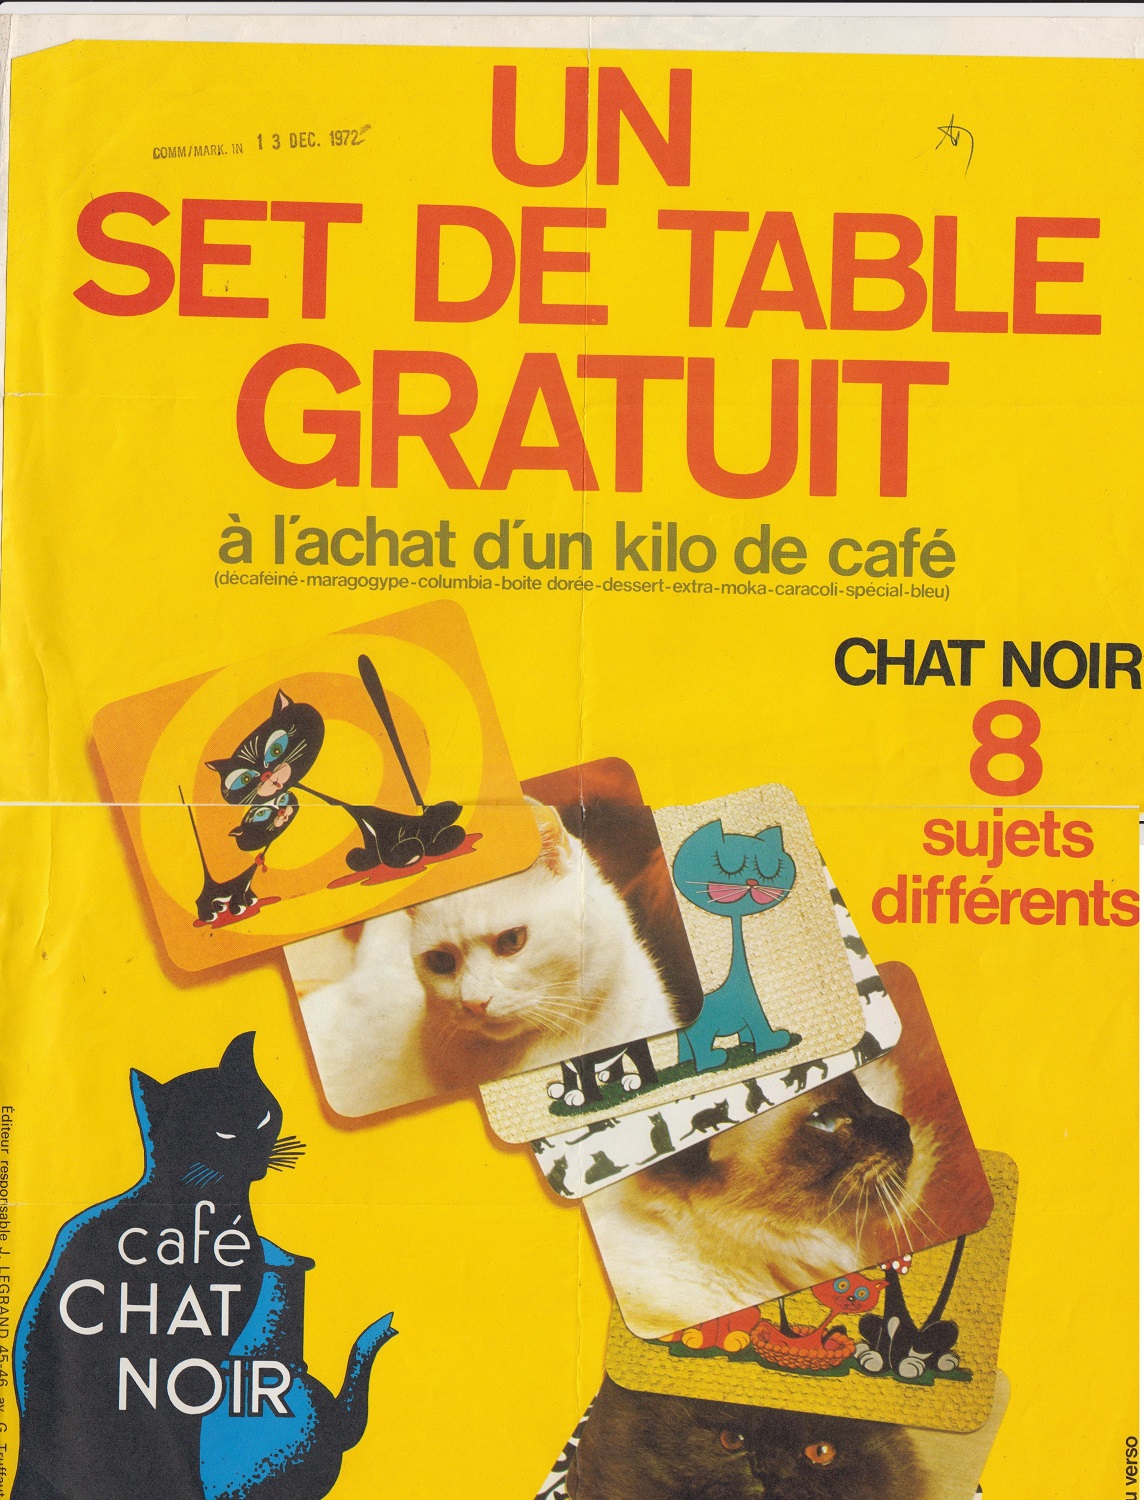 promotie van koffie Zwarte Katn 1972. Collectie Jacobs Douwe Egberts, Brussel.